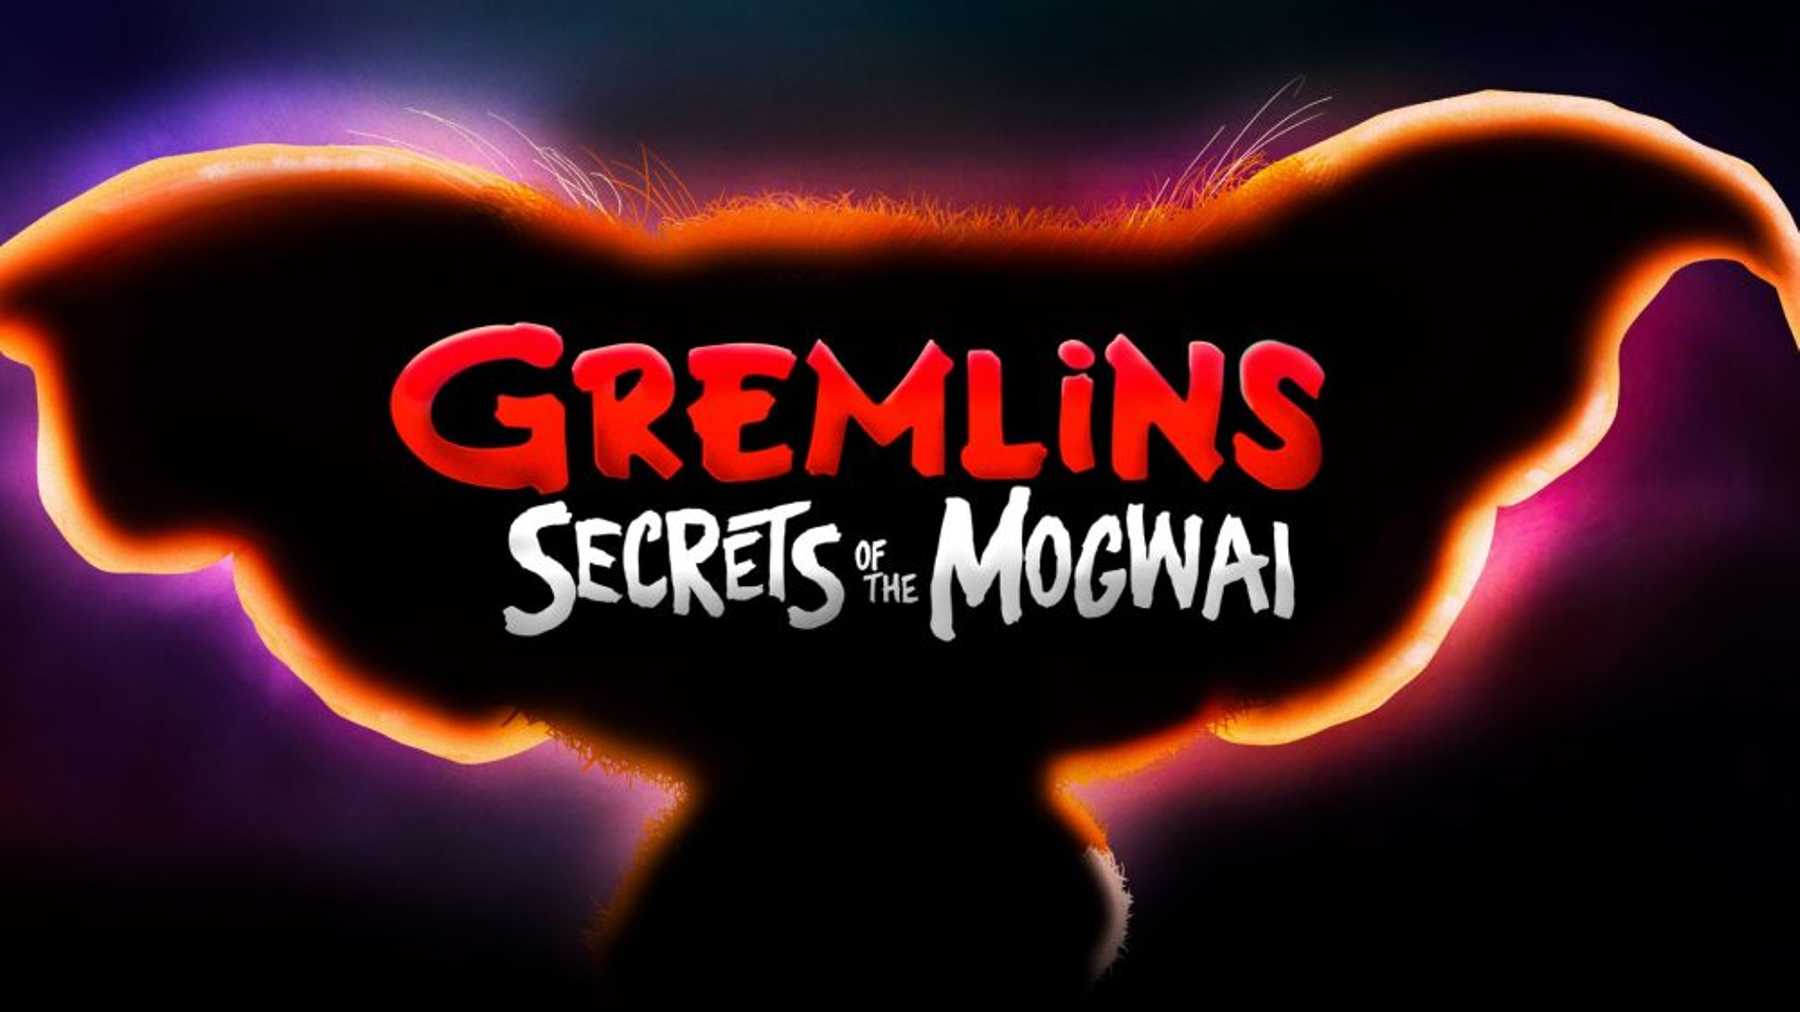 Заставка-логотип мультсериала "Гремлины: Секреты могвая"